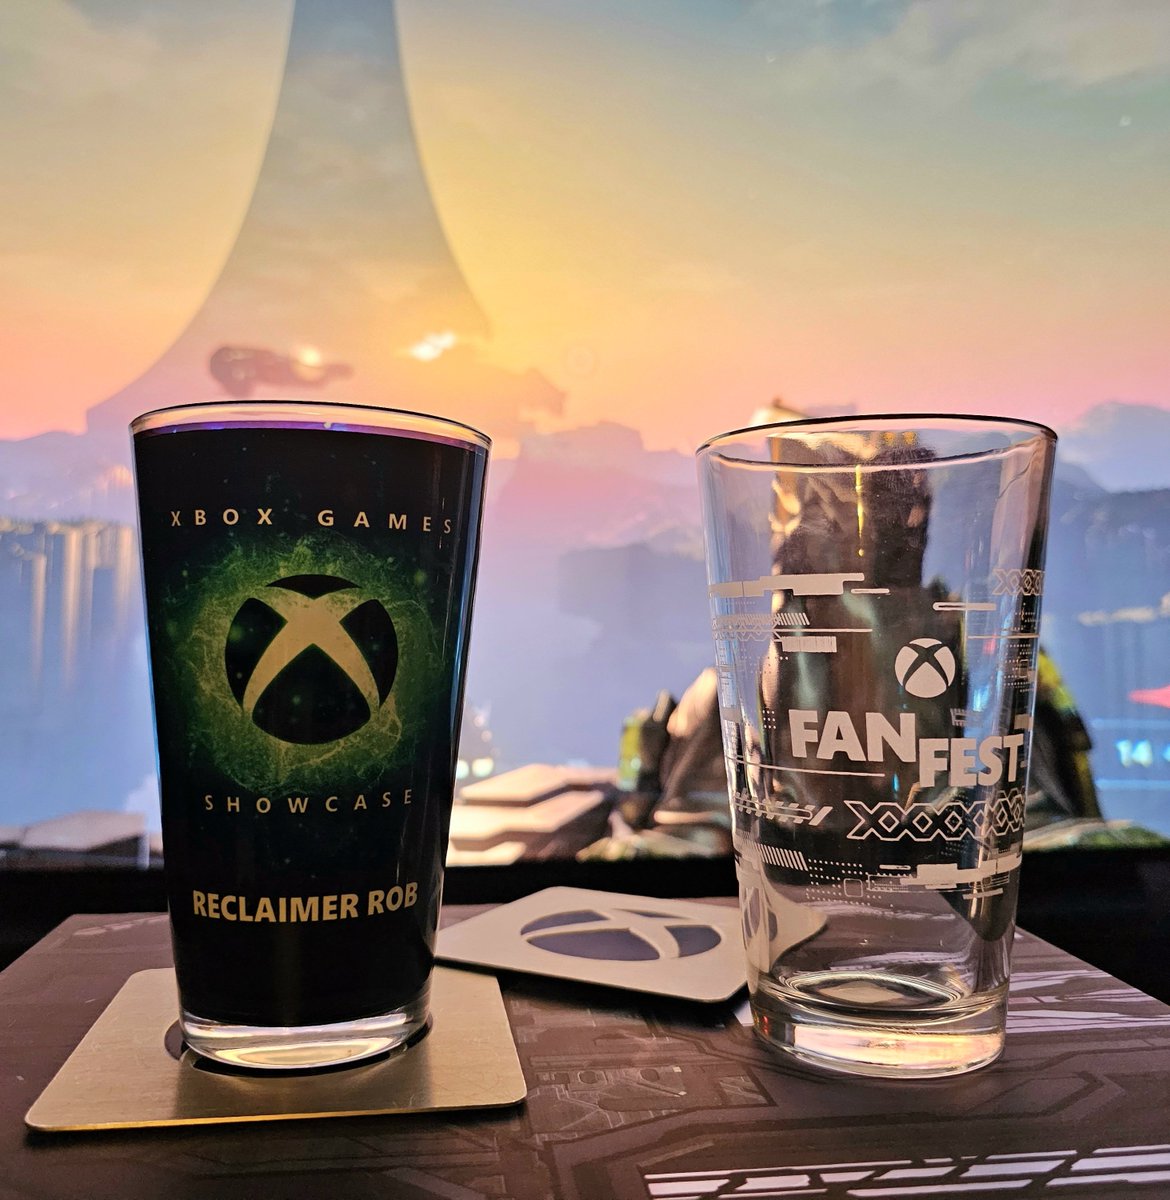 My new #Xbox drinking buddies.

#XboxFanFest #XboxShowcase
#HaloInfinite